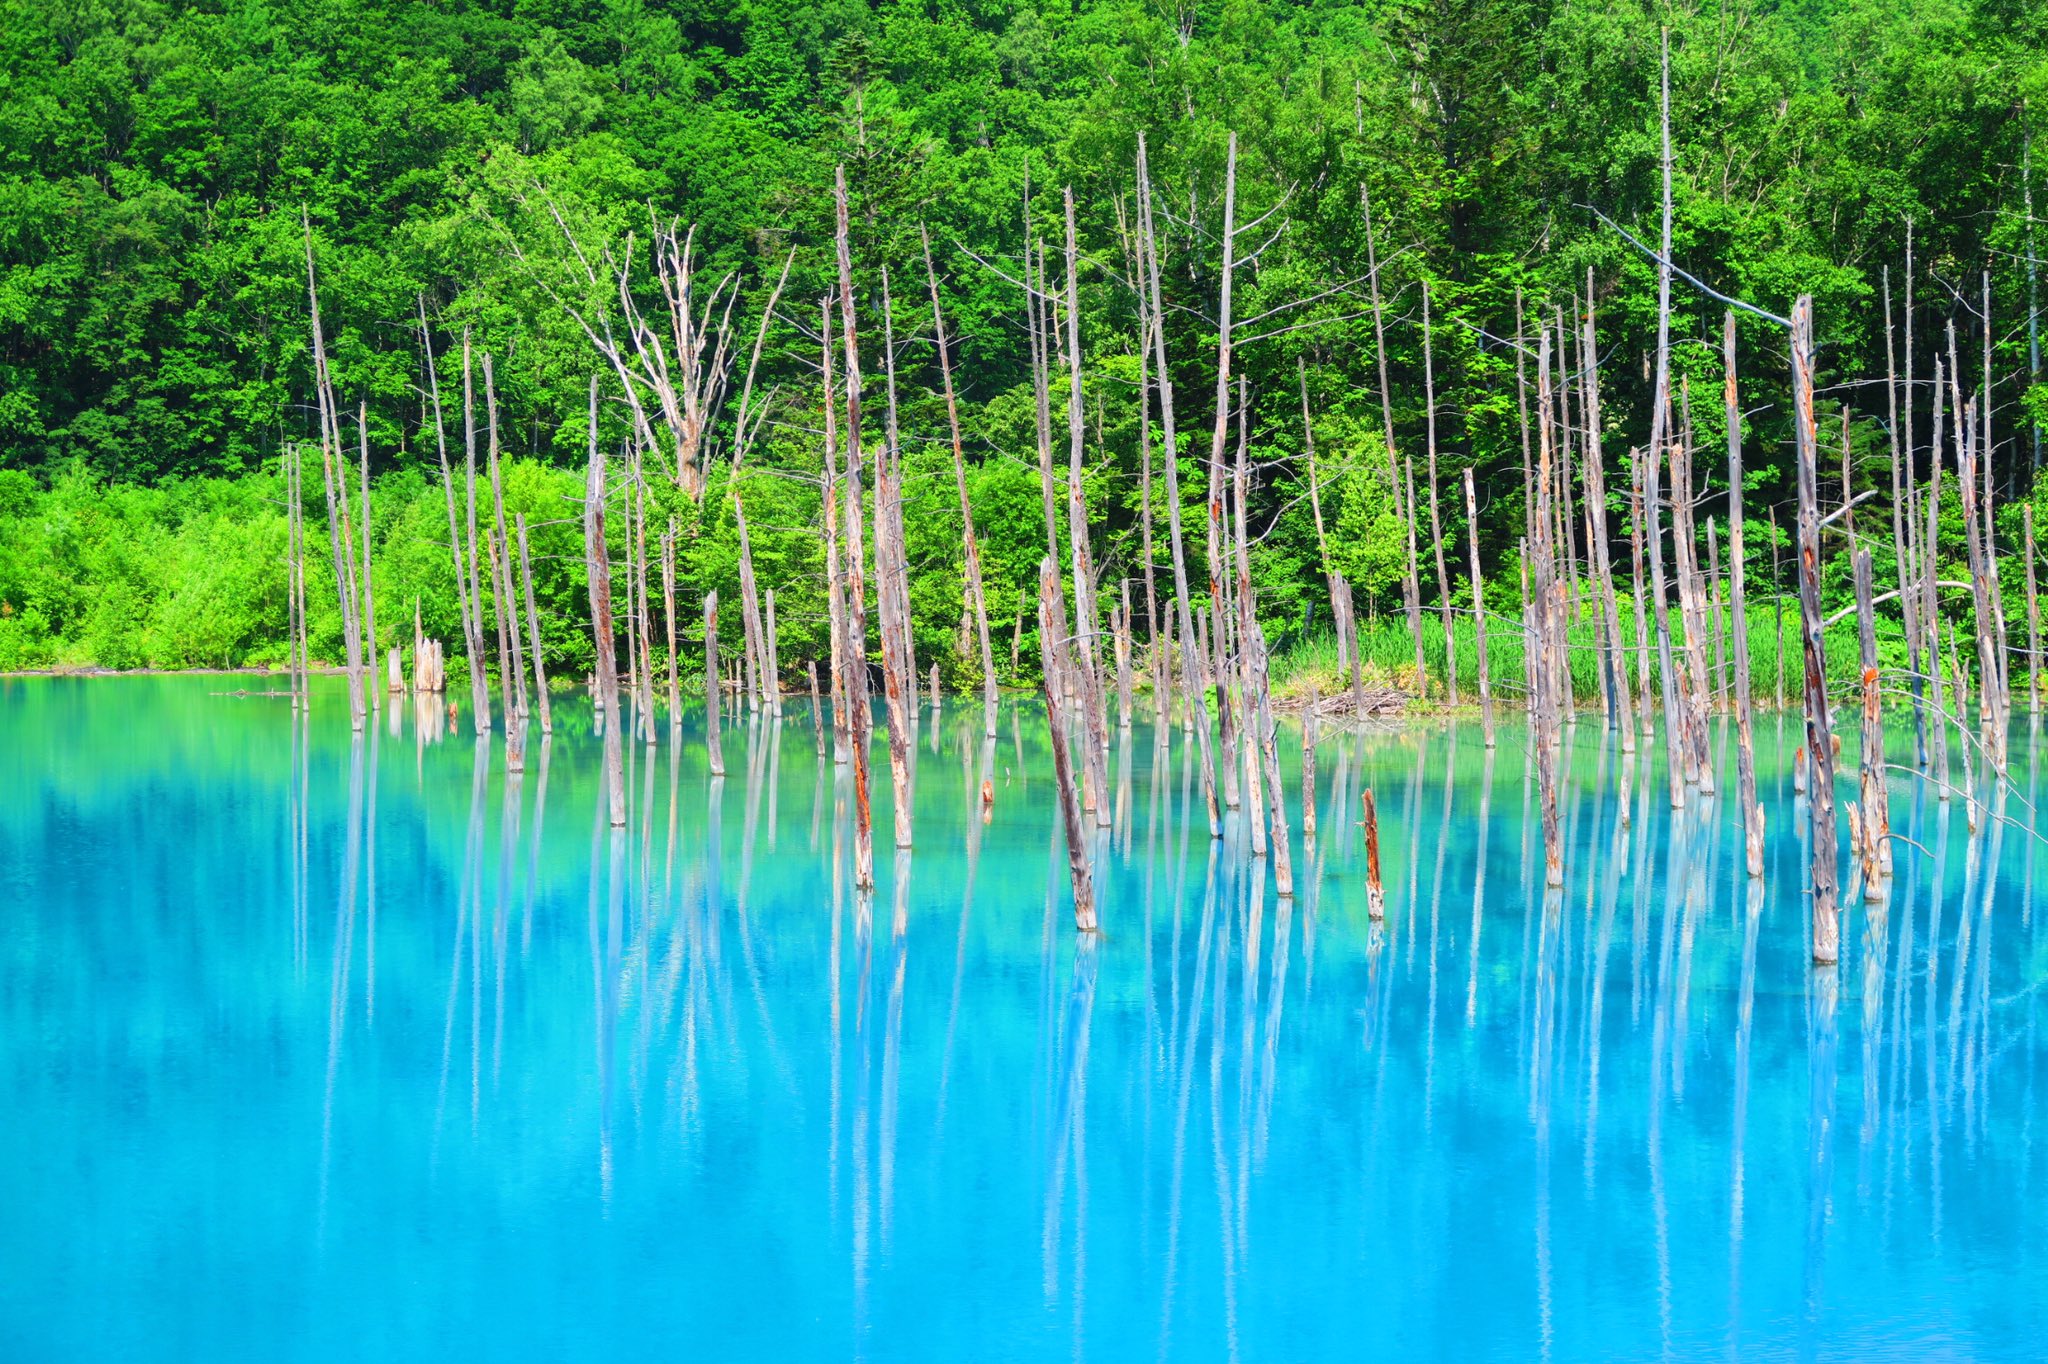 どあのぶ A Twitter 北海道 青い池 ダム工事の影響で偶然できた水たまりだそうです Apple社のiphoneなどの壁紙に採用されるほどの絶景でエイジブルーと呼ばれる鮮やかな青が綺麗なので是非行ってみて欲しいです 写真のような青の池が広がっていますよ 北海道